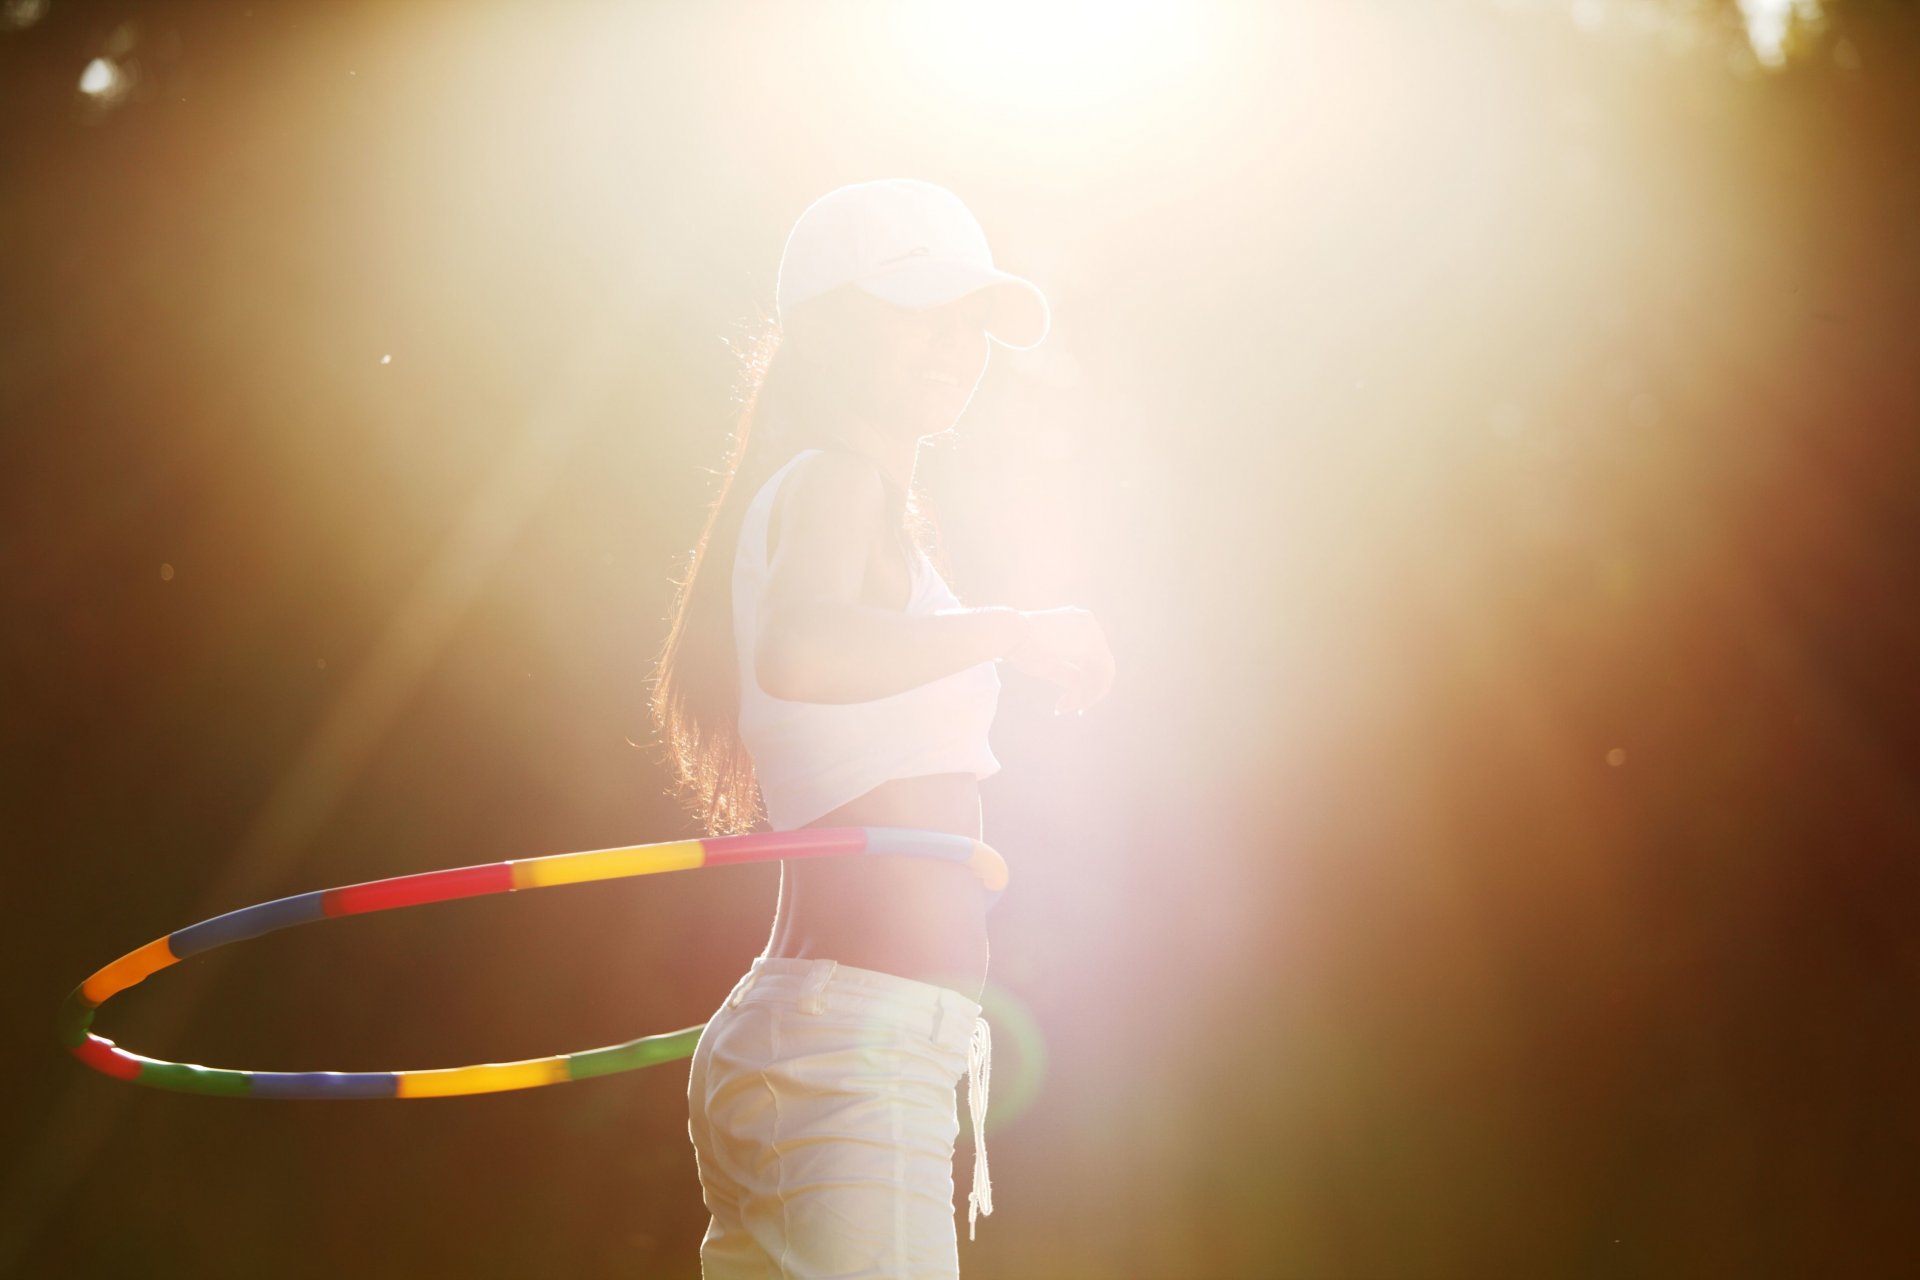 спорт девушка обруч хулахуп фигура движение вращение занятие кепка бейсболка солнце лучи фон обои широкоформатные полноэкранные широкоэкранные